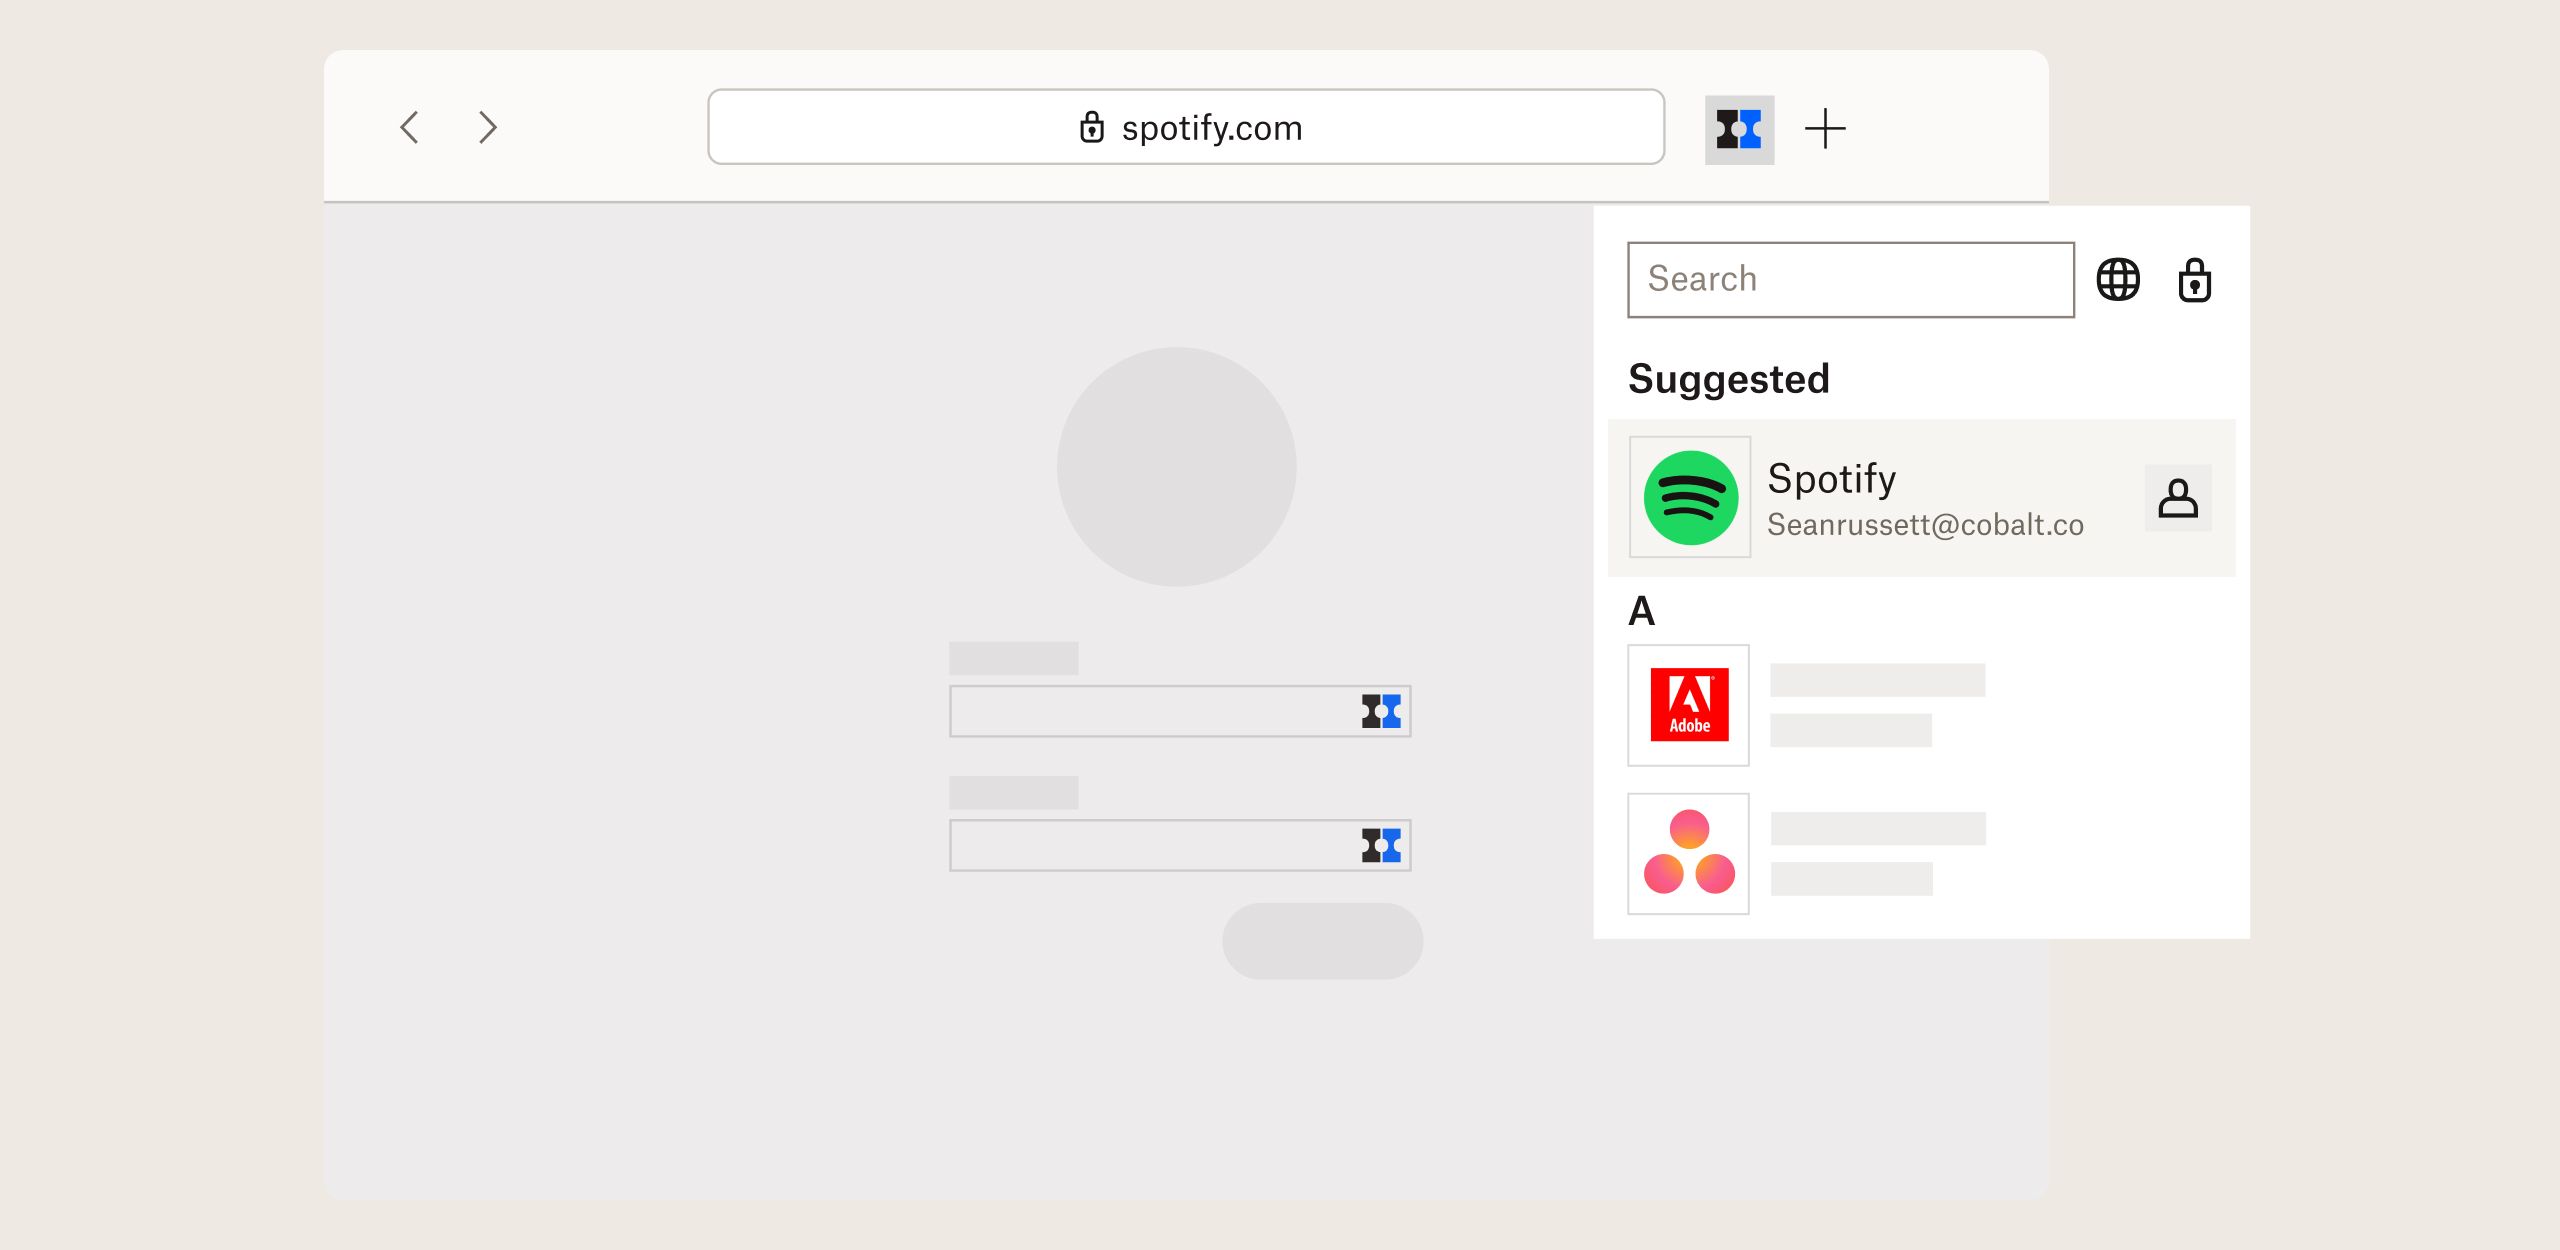 La interfaz de usuario del producto muestra la funcionalidad de búsqueda en Dropbox Passwords